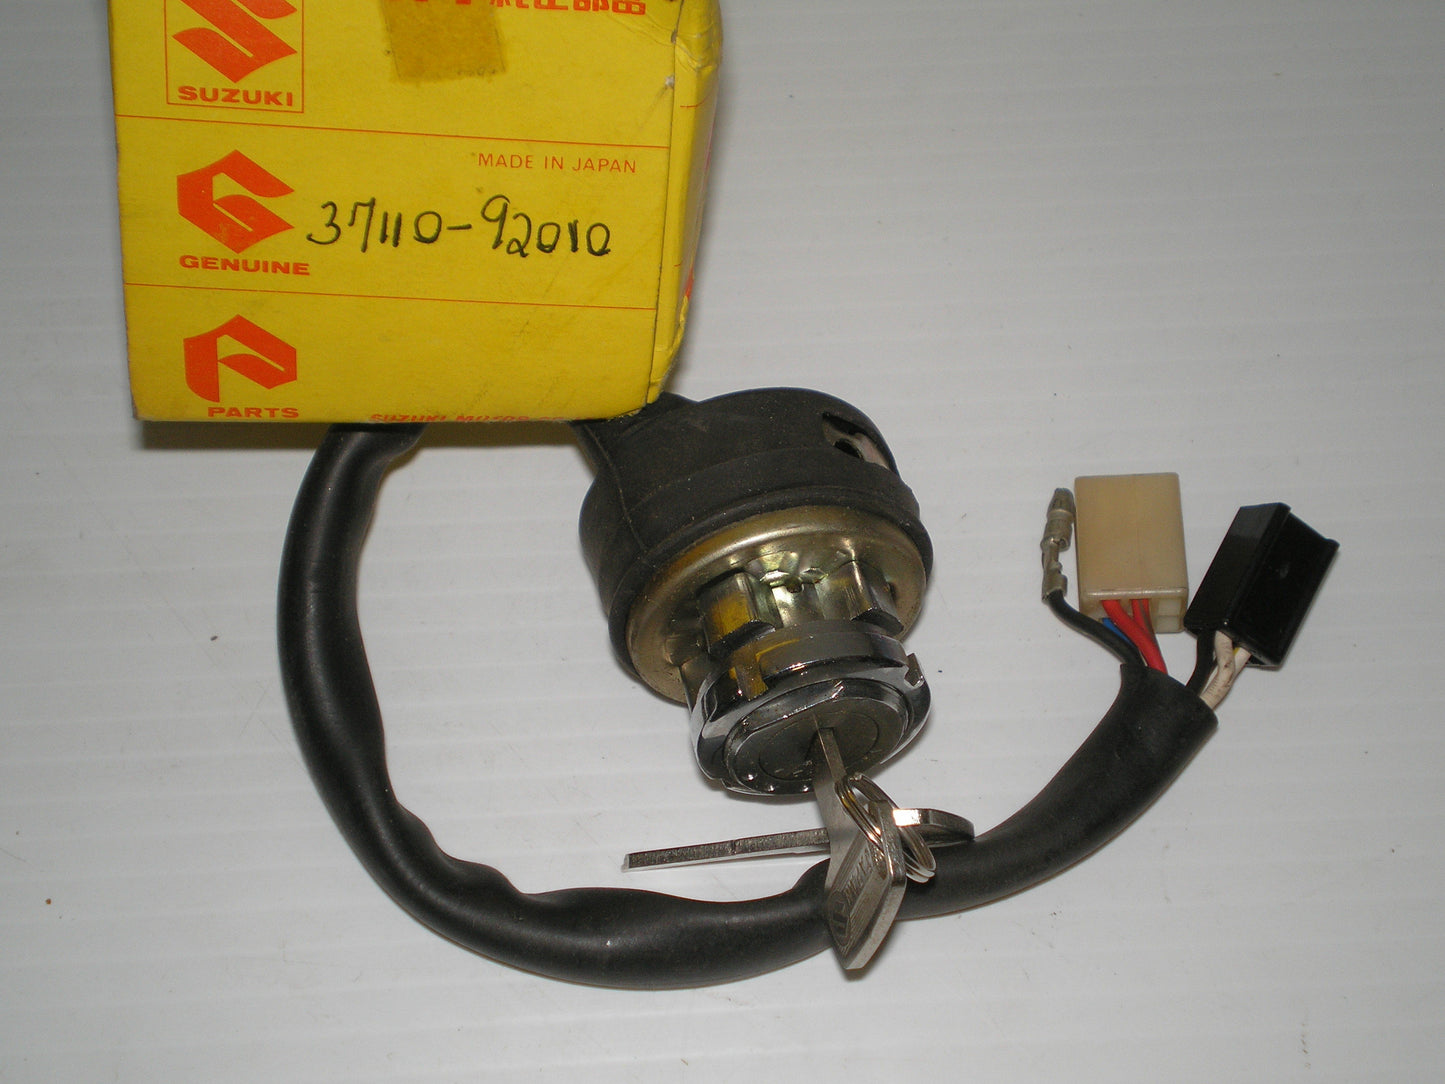 SUZUKI SM30 SM40 Ignition Switch Assembly & Key 37110-92010